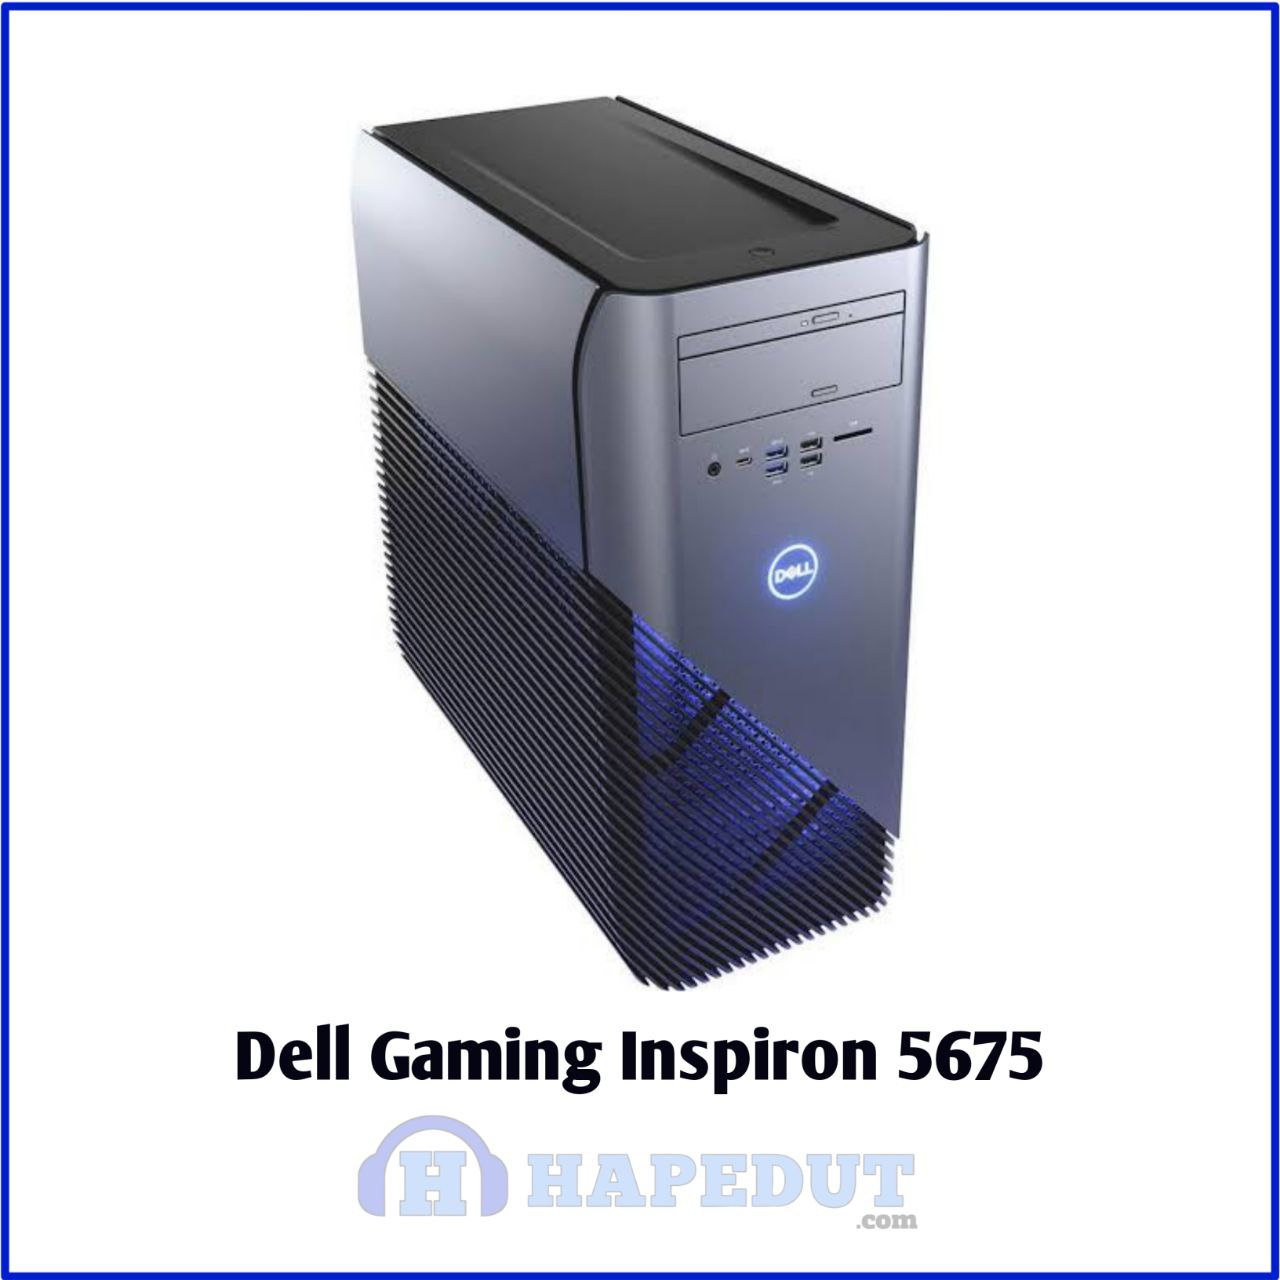 Dell Gaming Inspiron 5675 : Hapedut